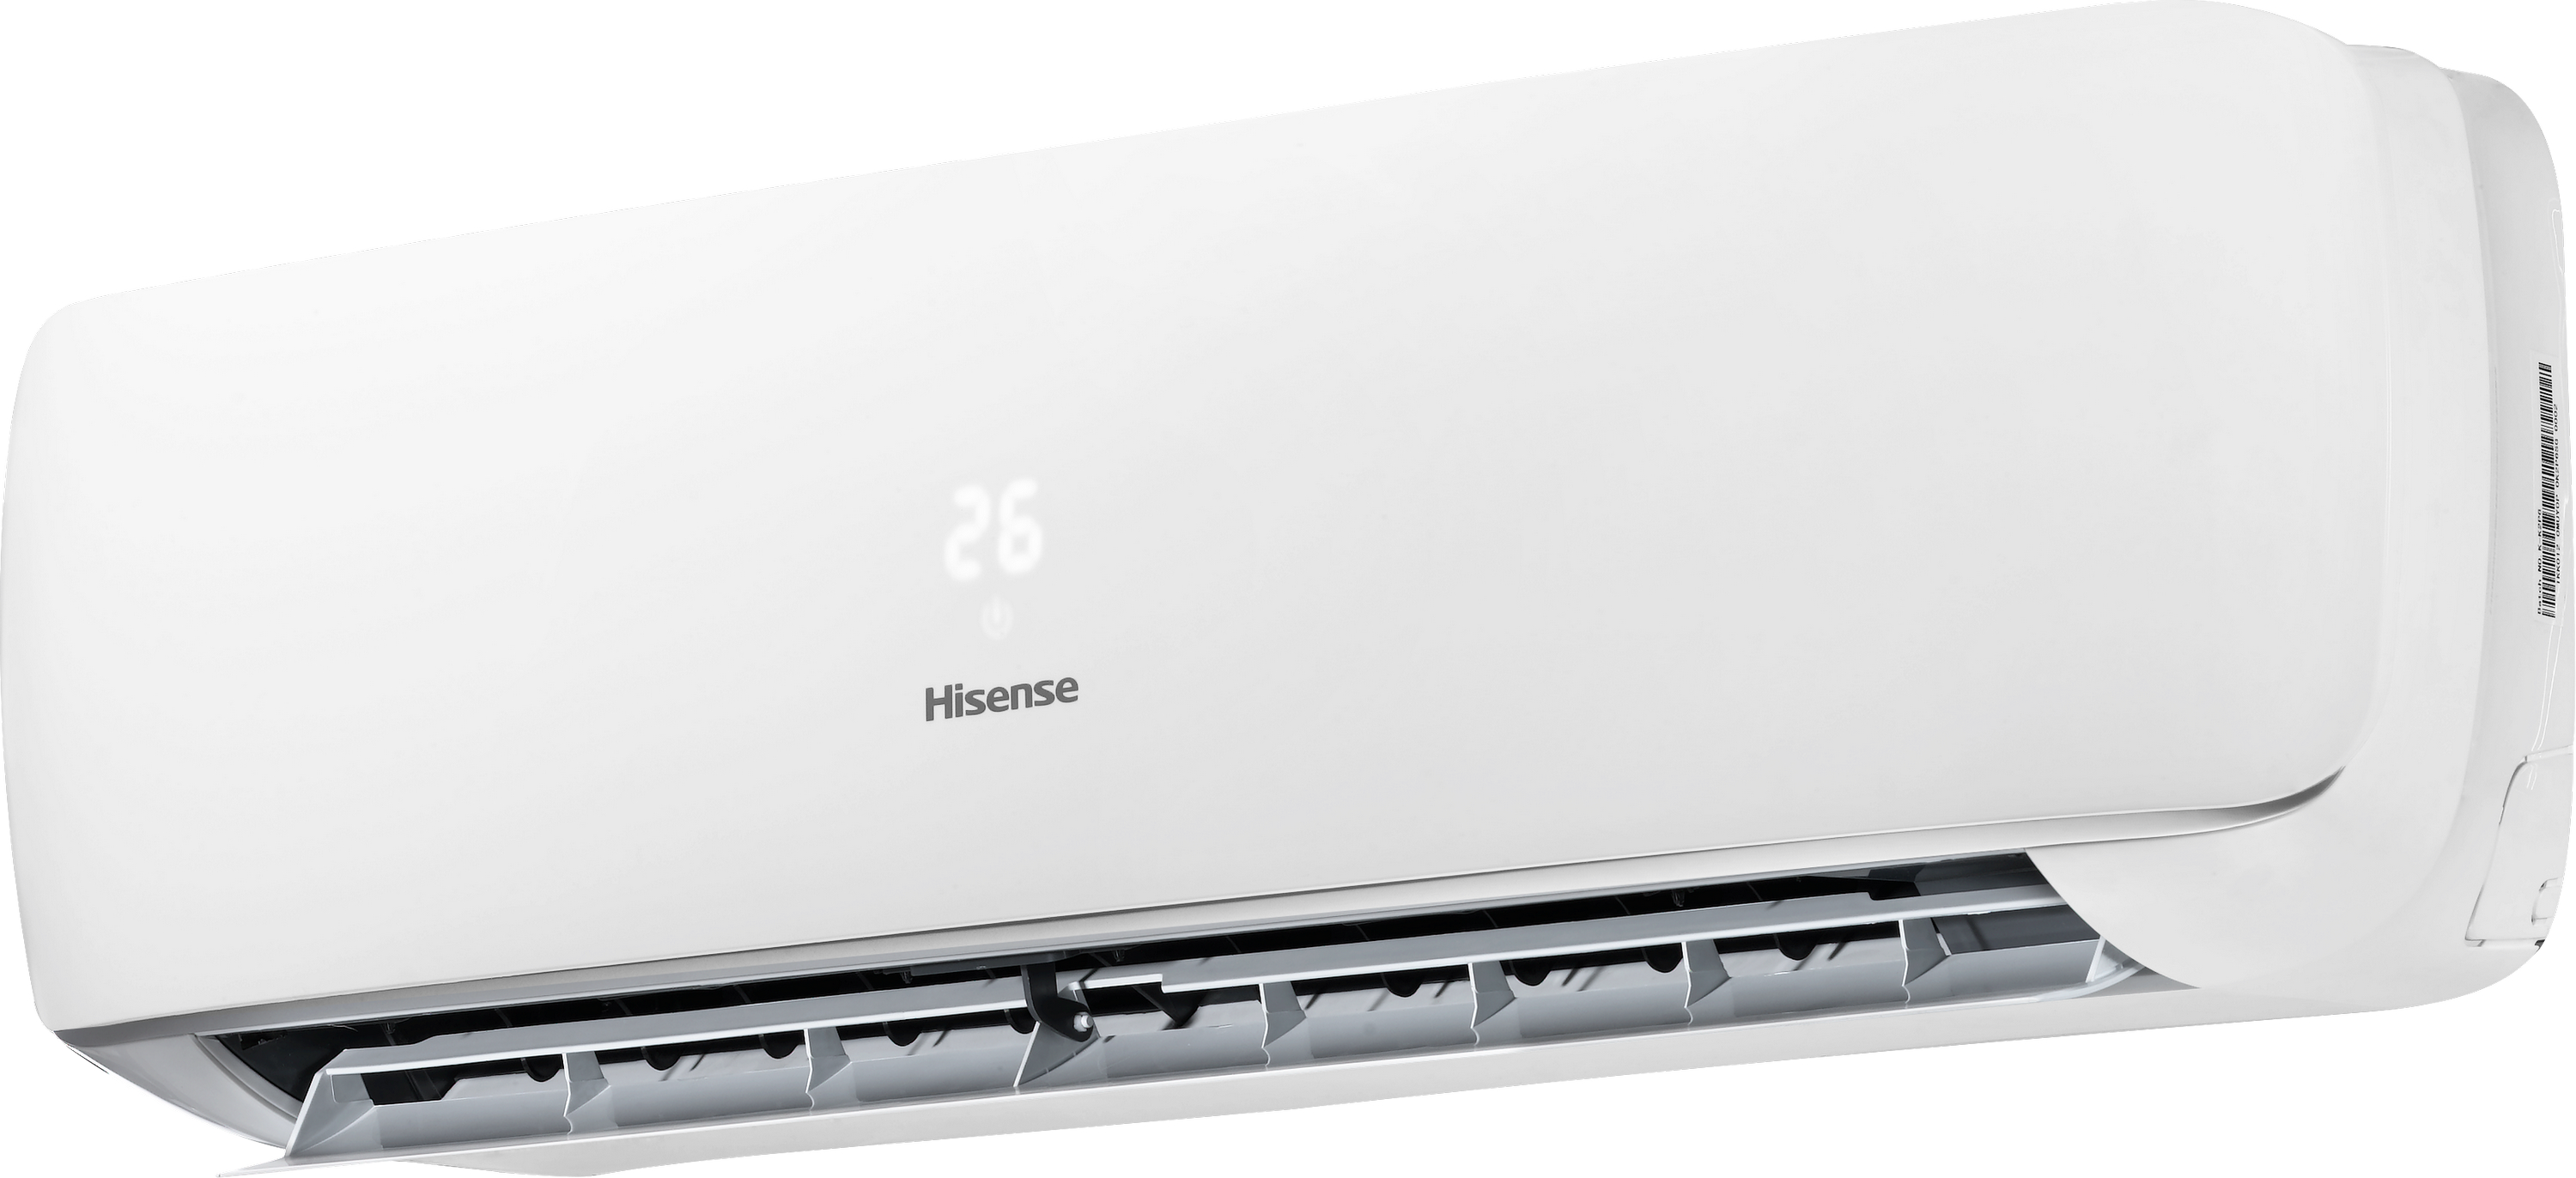 Кондиционер сплит-система Hisense Apple Pie R32 TG70BB0B отзывы - изображения 5